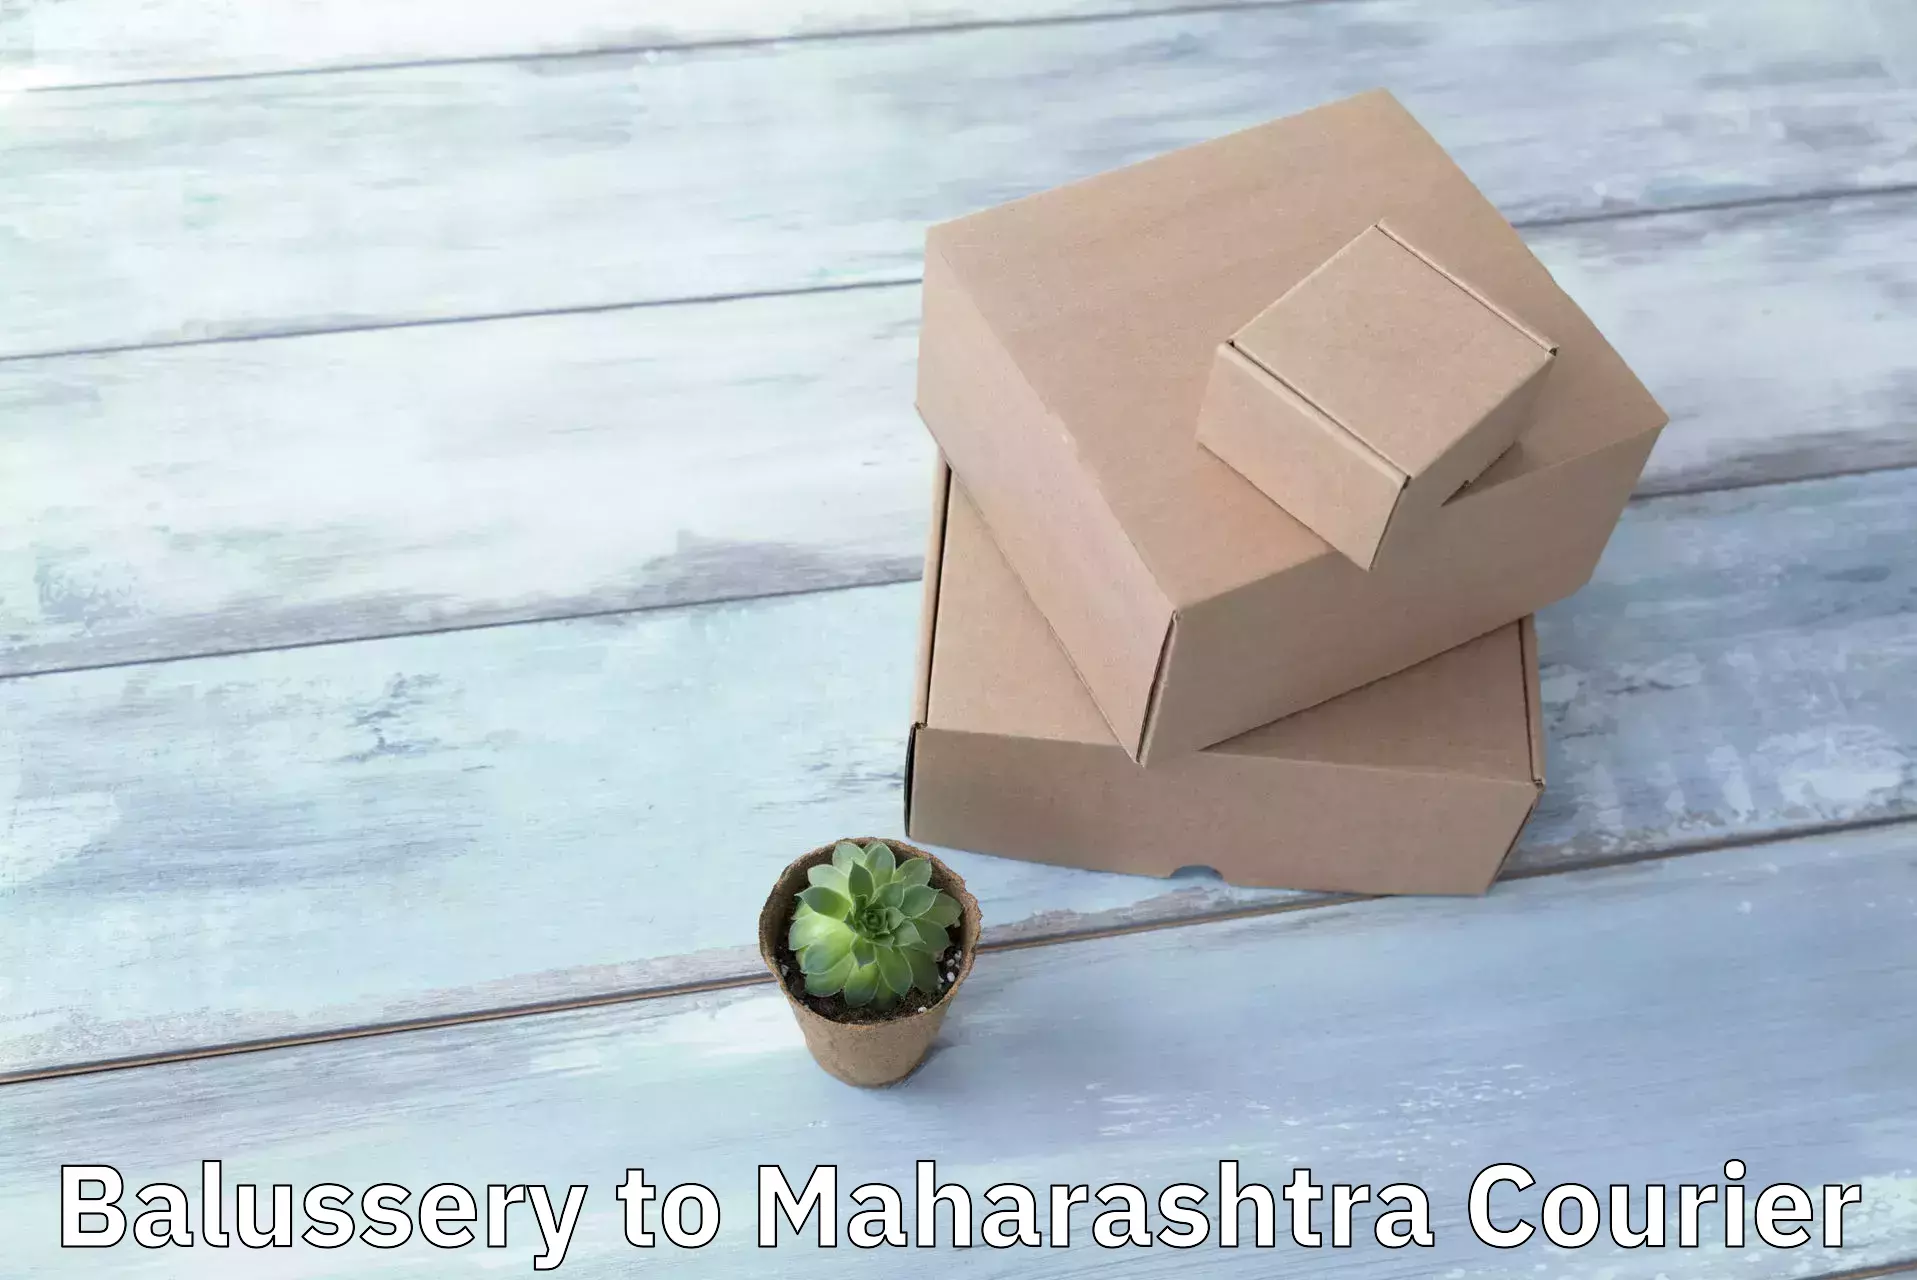 Expedited shipping methods Balussery to Maharashtra